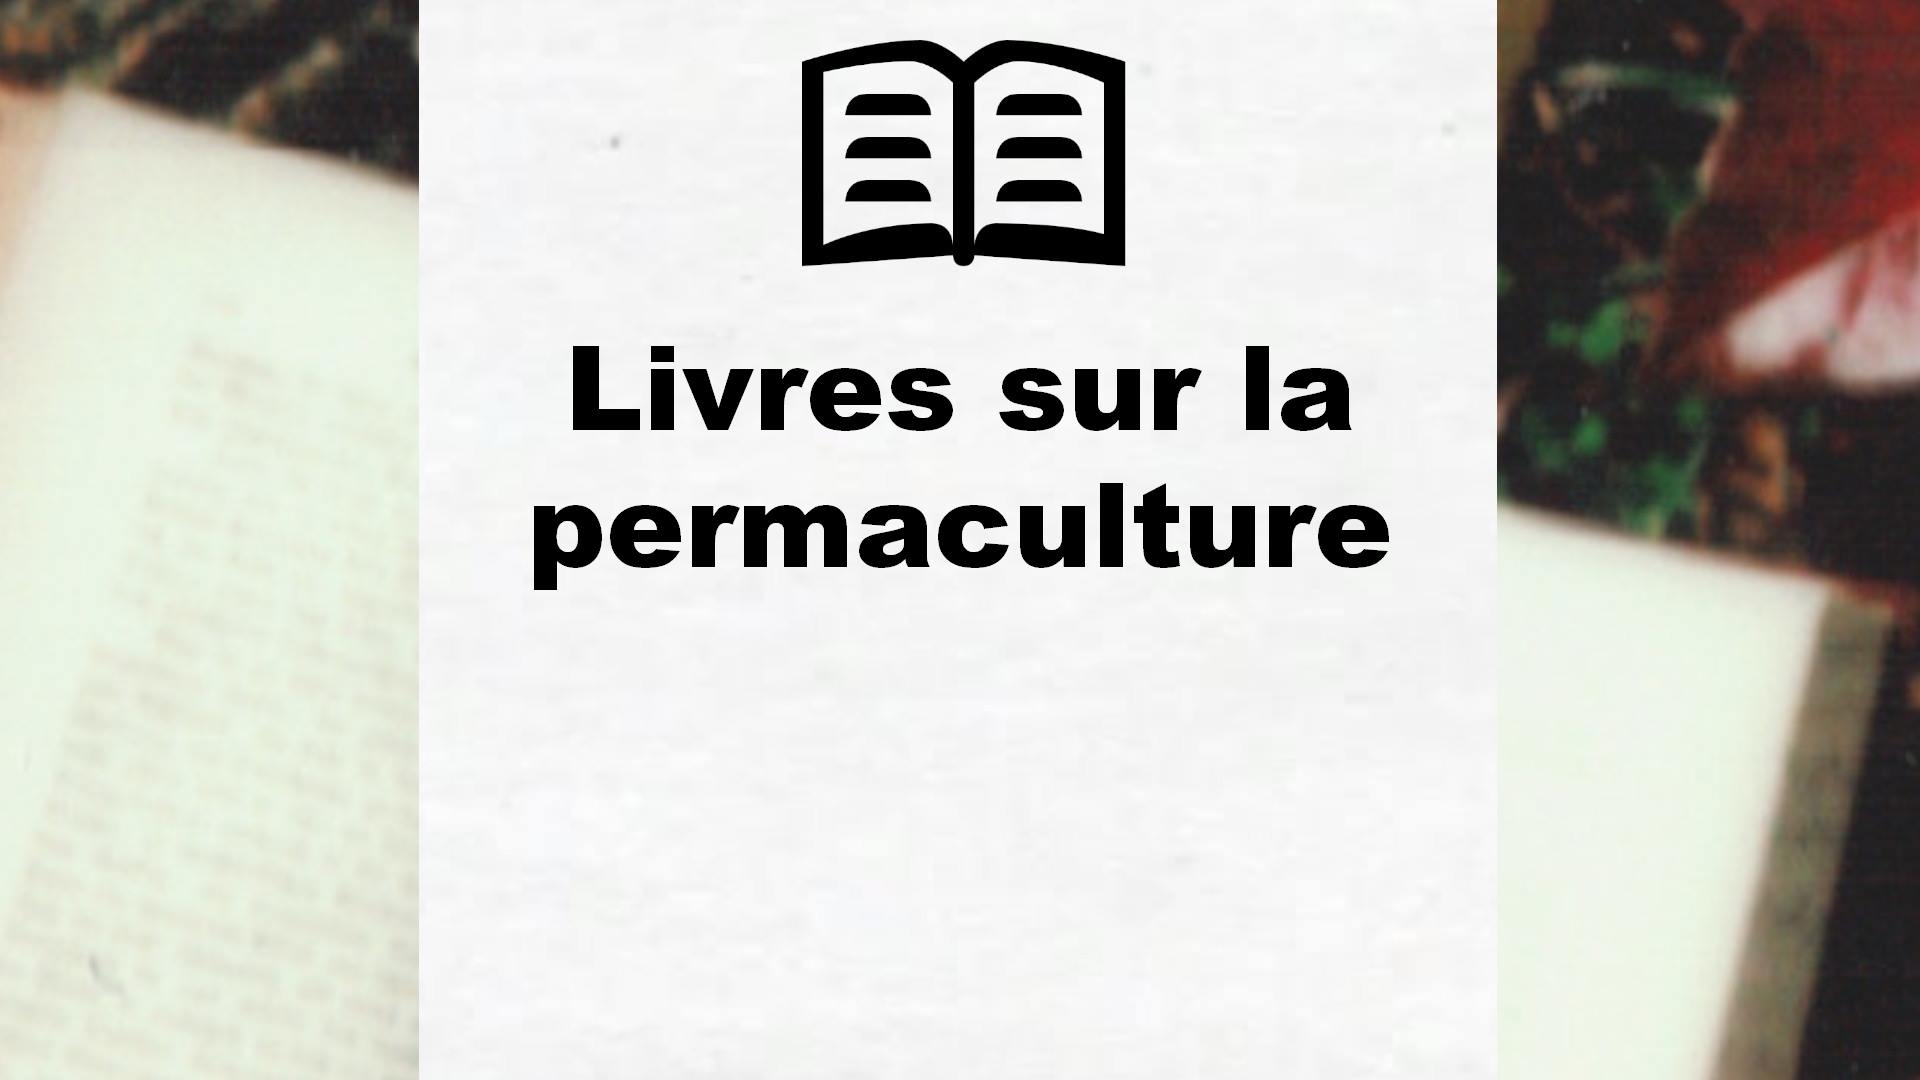 Livres sur la permaculture